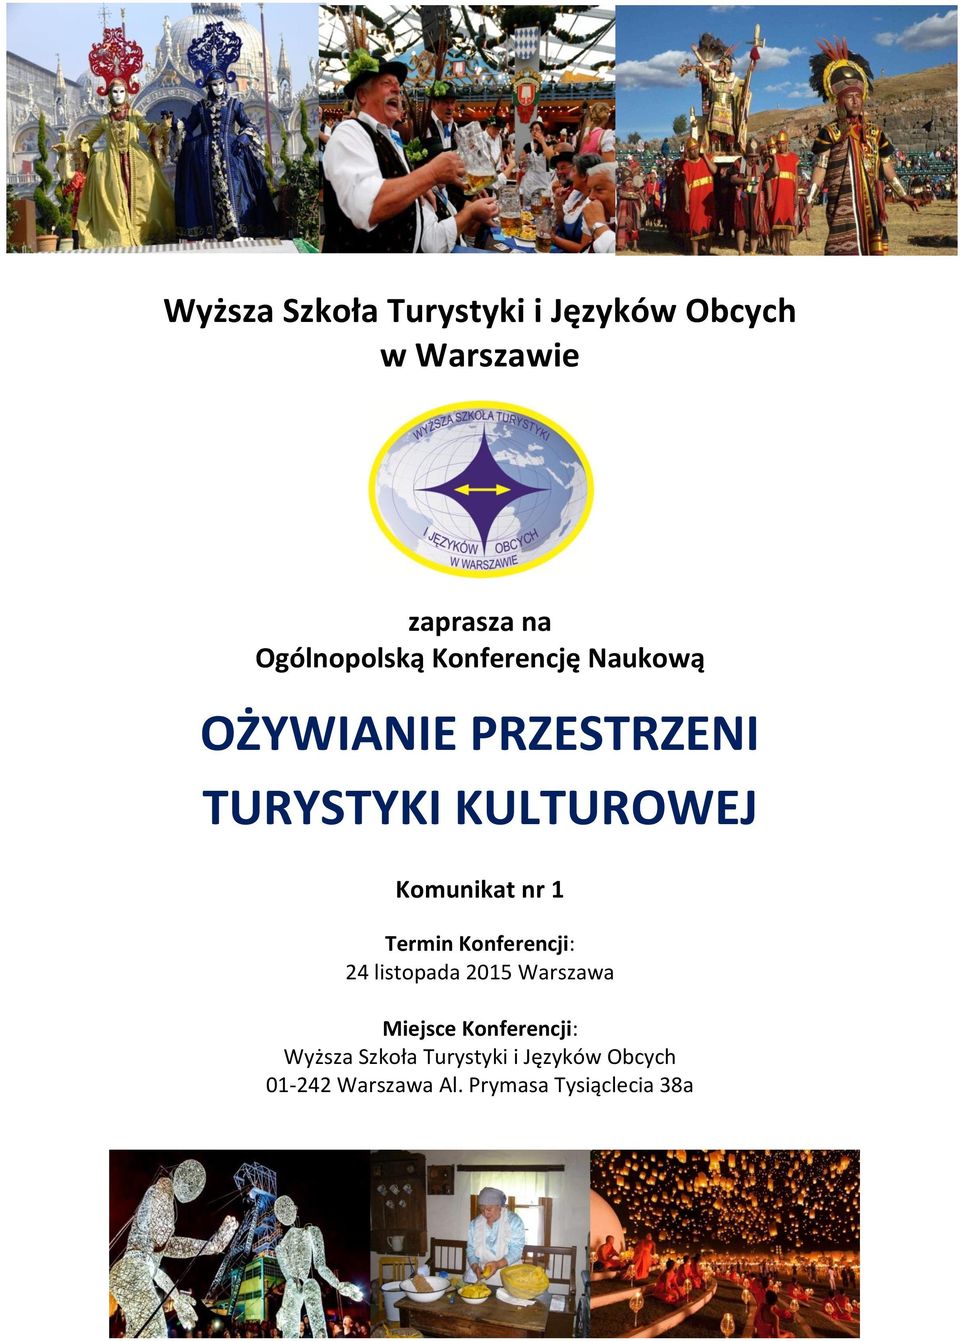 Termin Konferencji: 24 listopada 2015 Warszawa Miejsce Konferencji: Wyższa